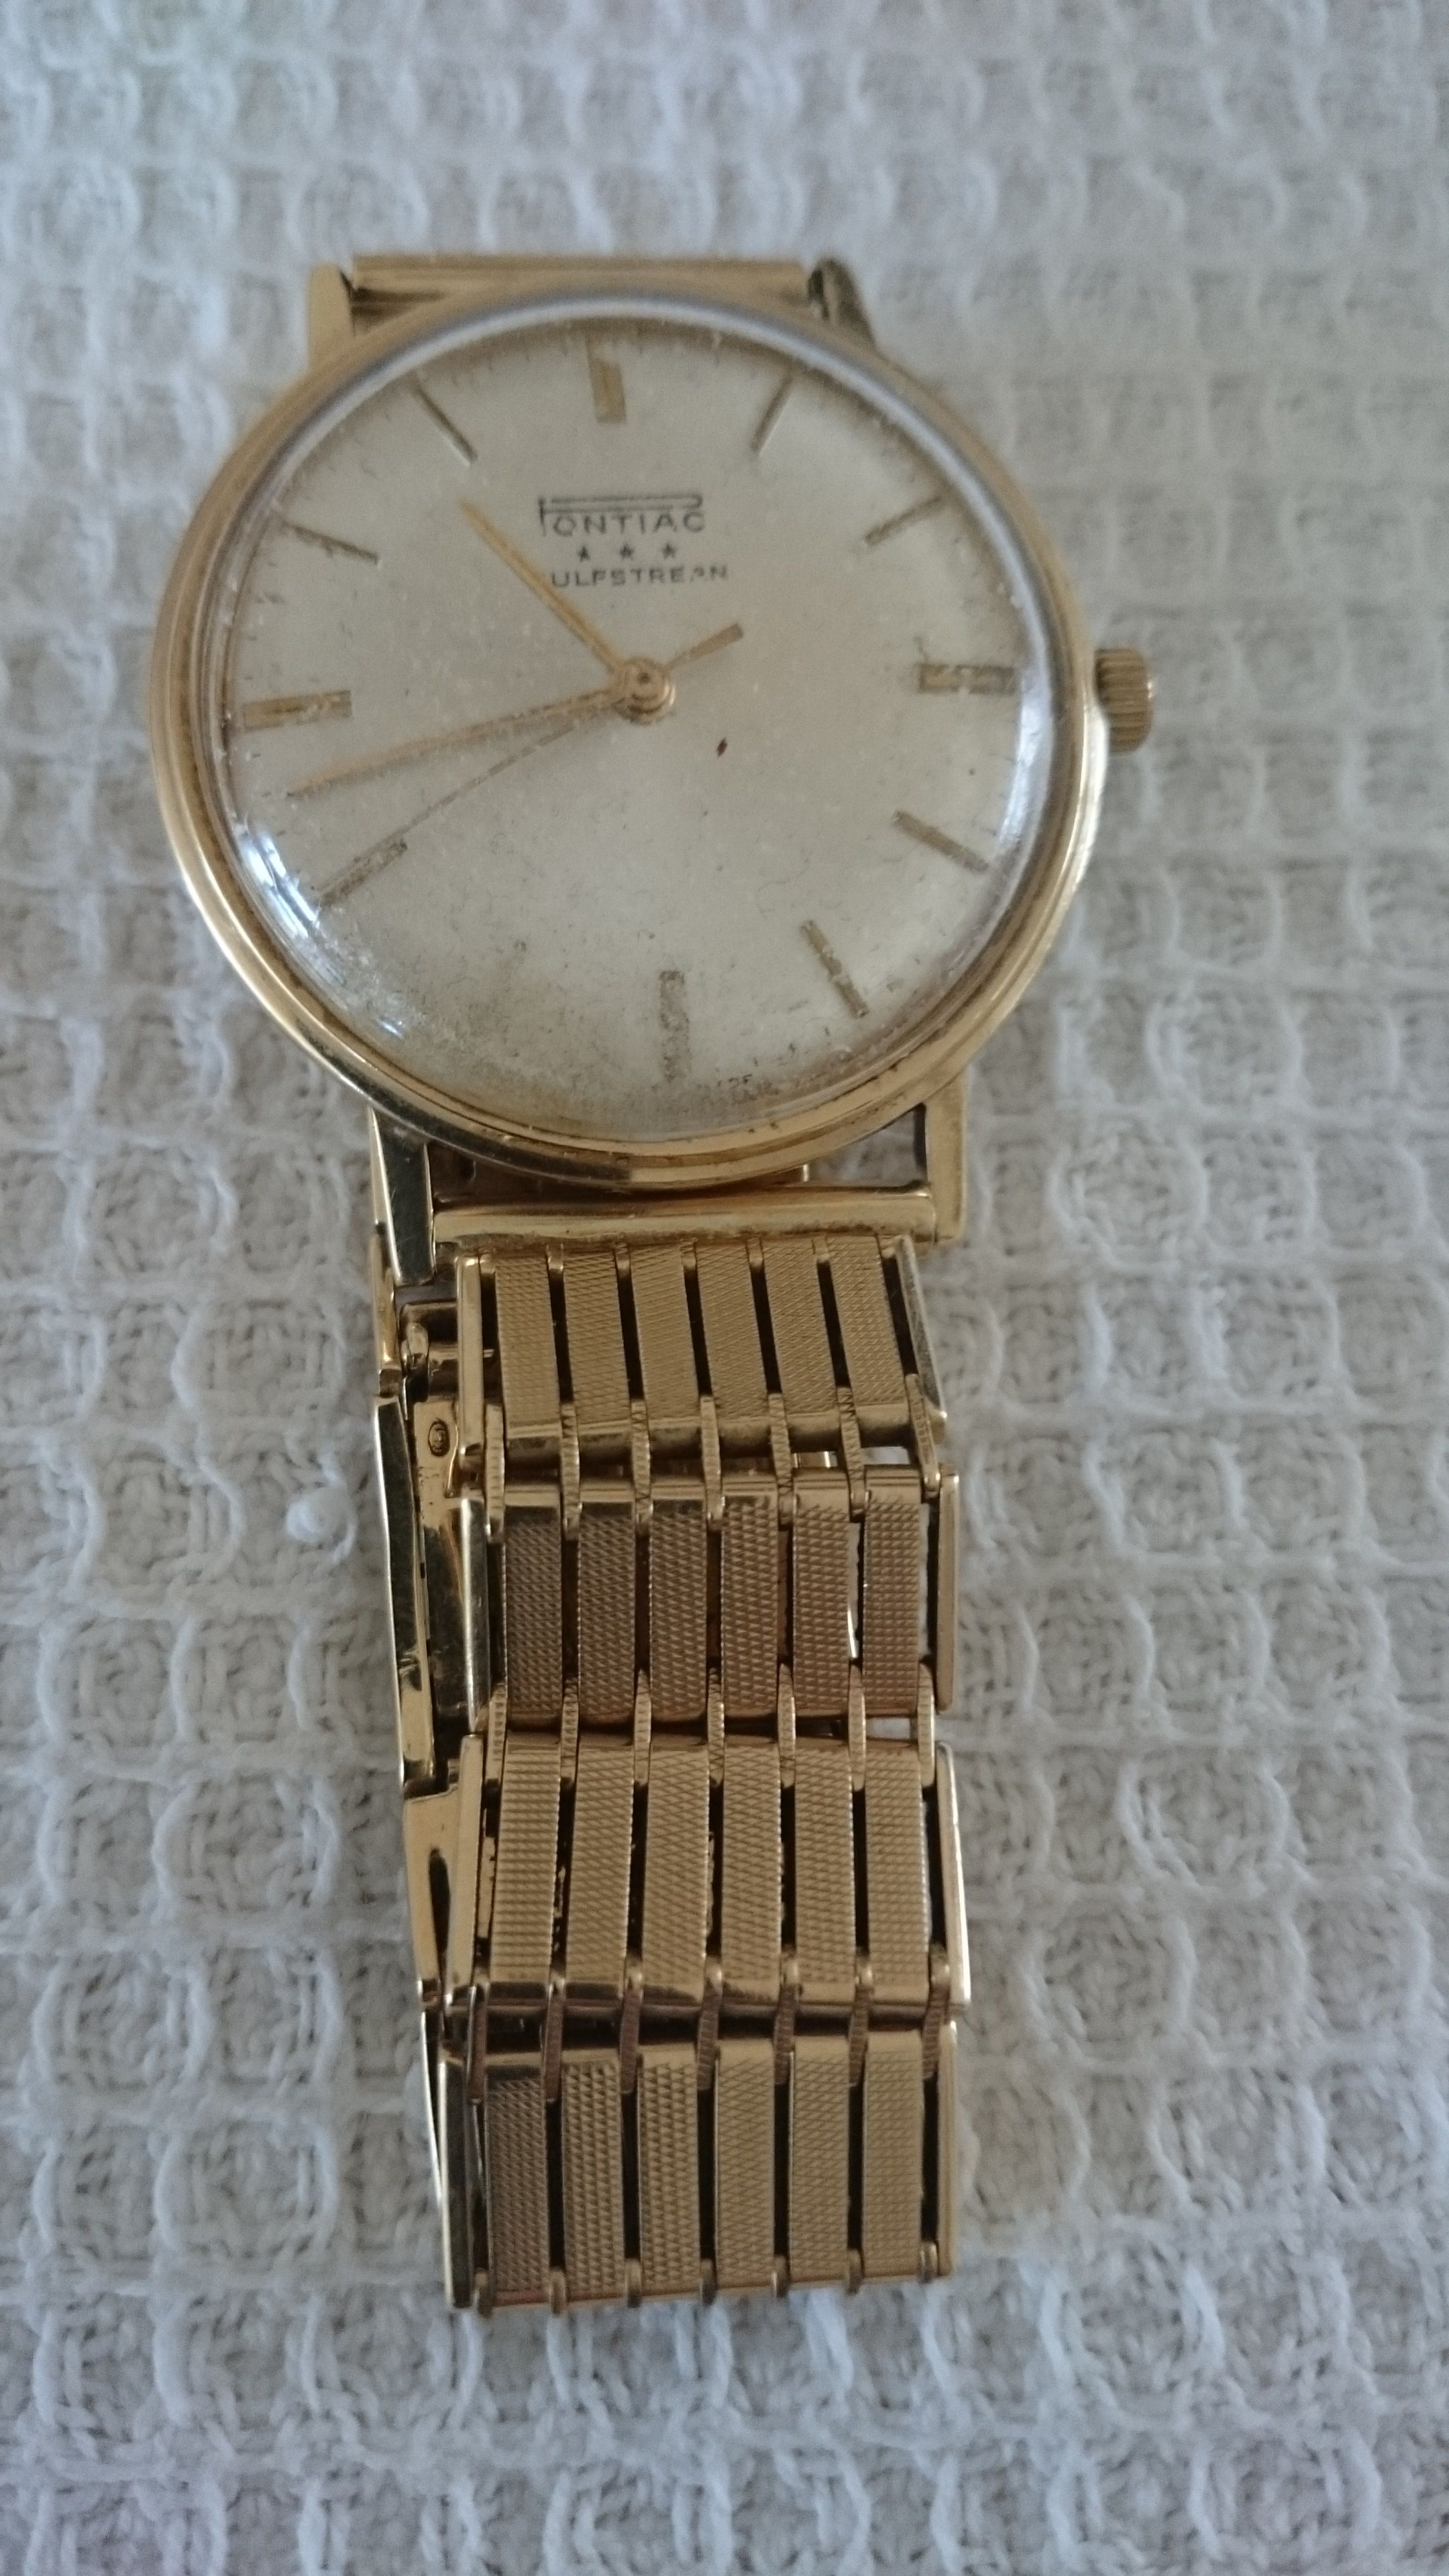 Durven voorspelling baan Waarde van een gouden Pontiac? - Vintage Horlogeforum - Horlogeforum.nl -  het forum voor liefhebbers van horloges